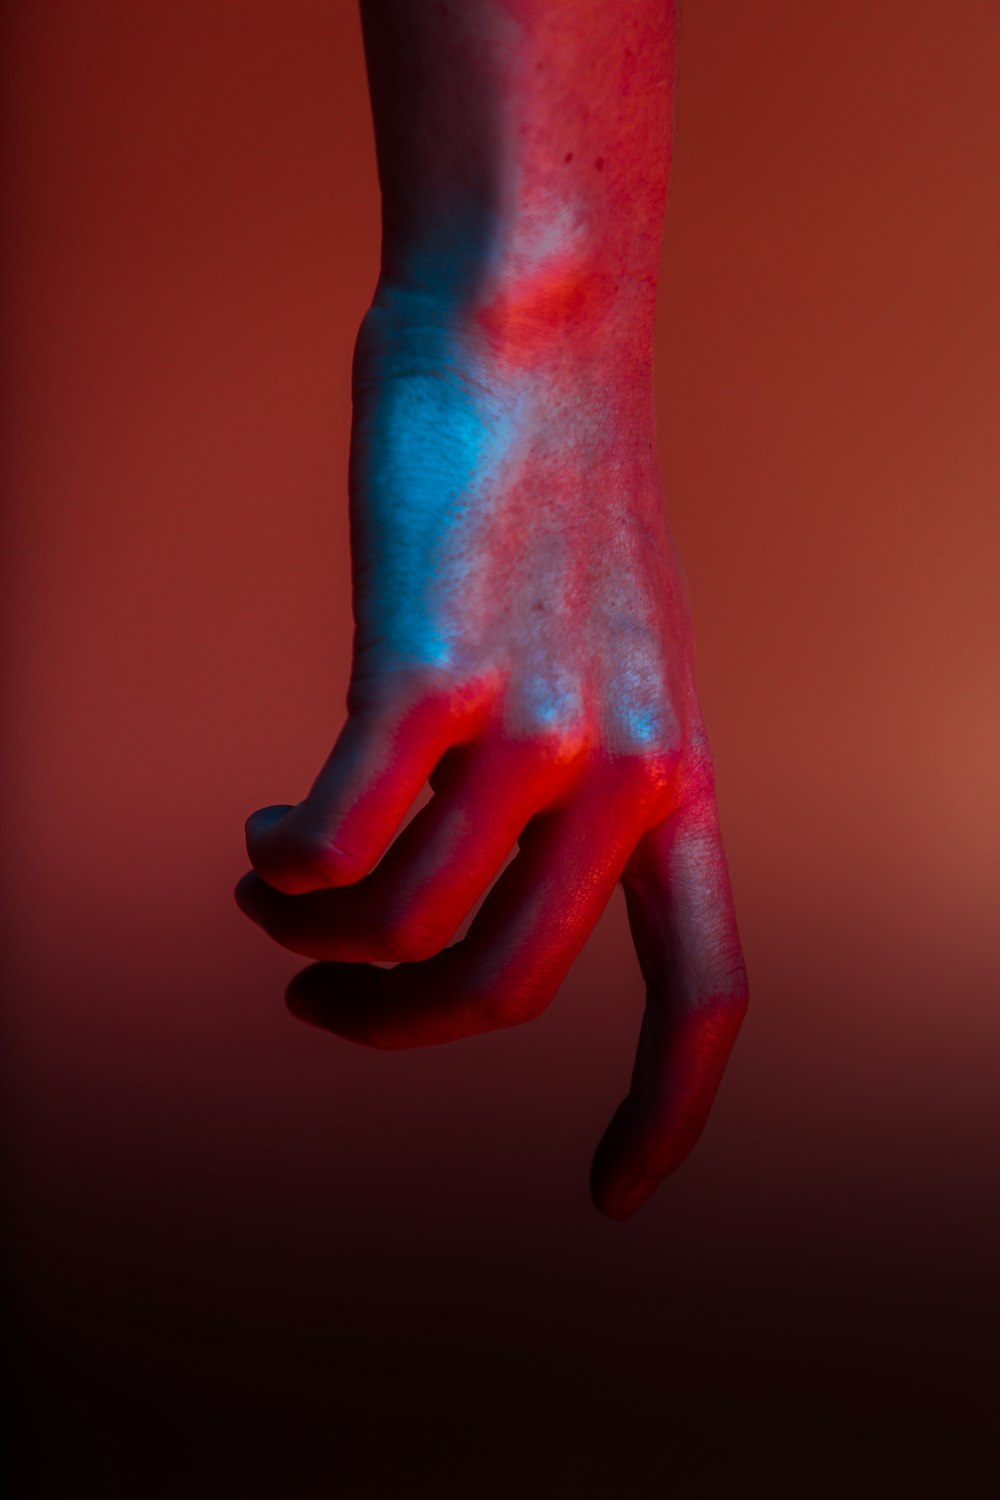 Photographie à mise au point peu profonde de la main avec de la peinture rouge